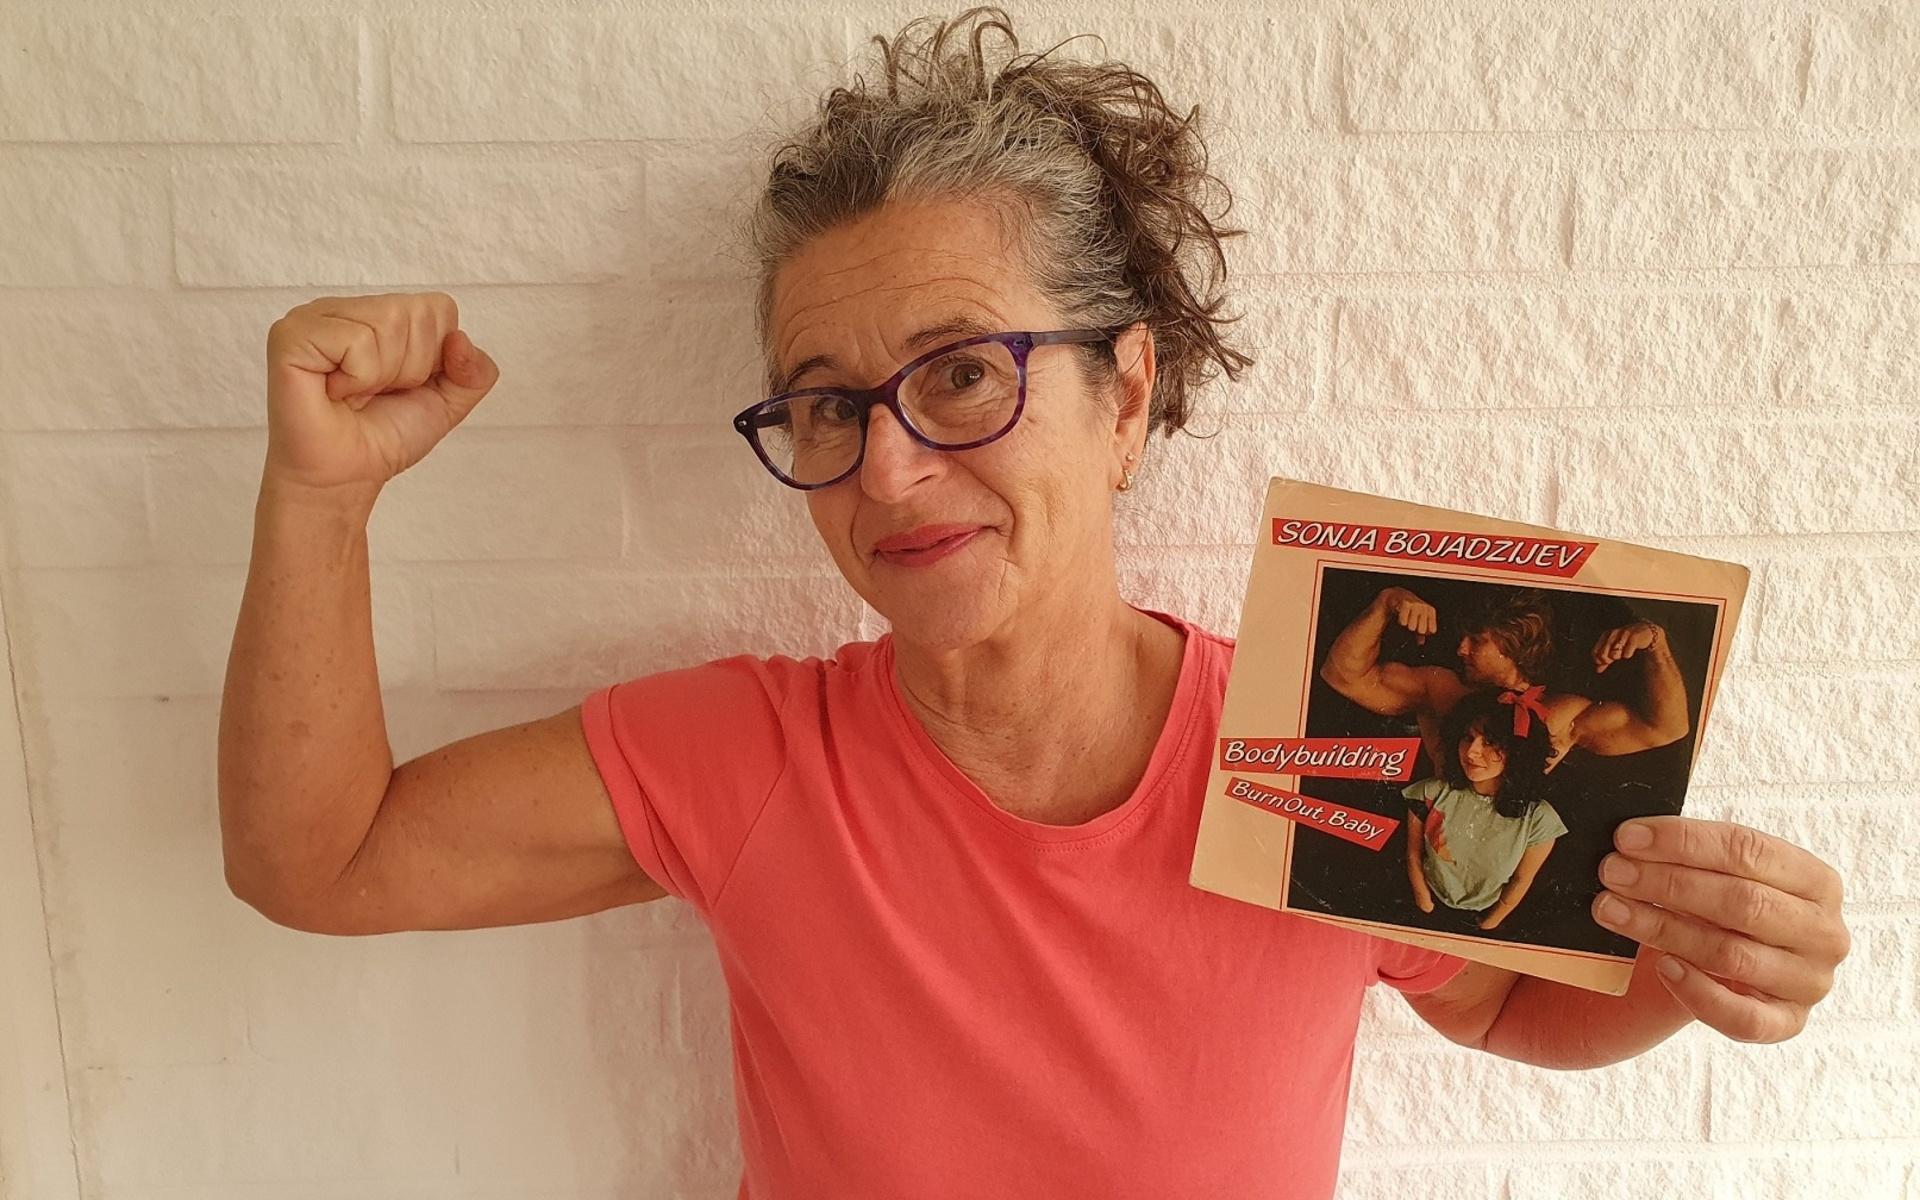 Sonja Bjurdell fick sig en smärre chock när hennes låt ”Bodybuilding” plötsligt spelades på radio efter nära 40 år. Nu finns den även att streama på Spotify sedan en knapp vecka tillbaka.